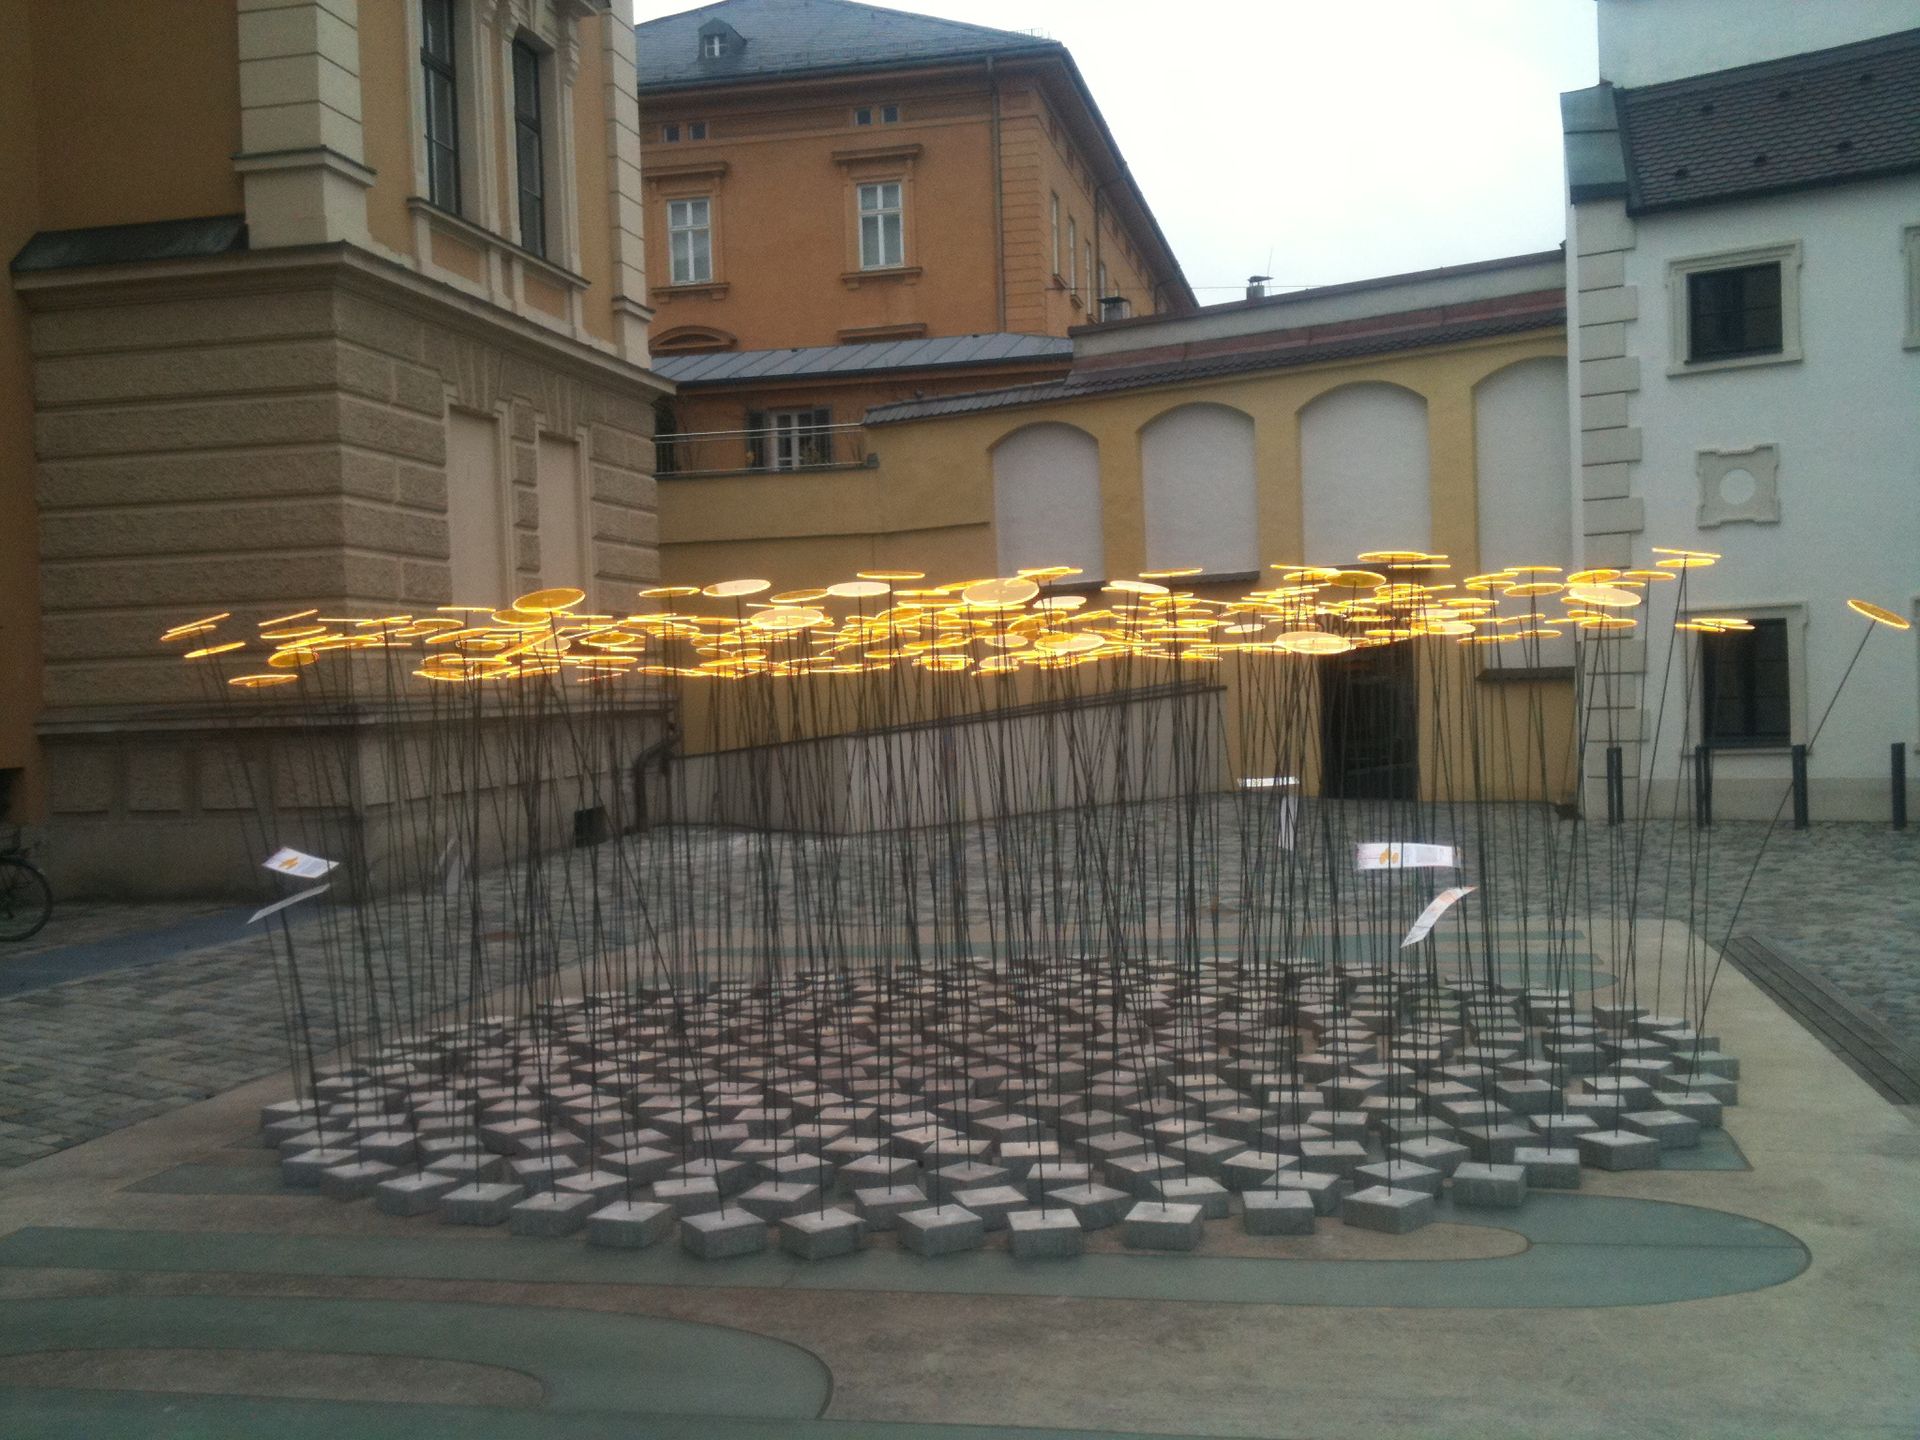 round art installation